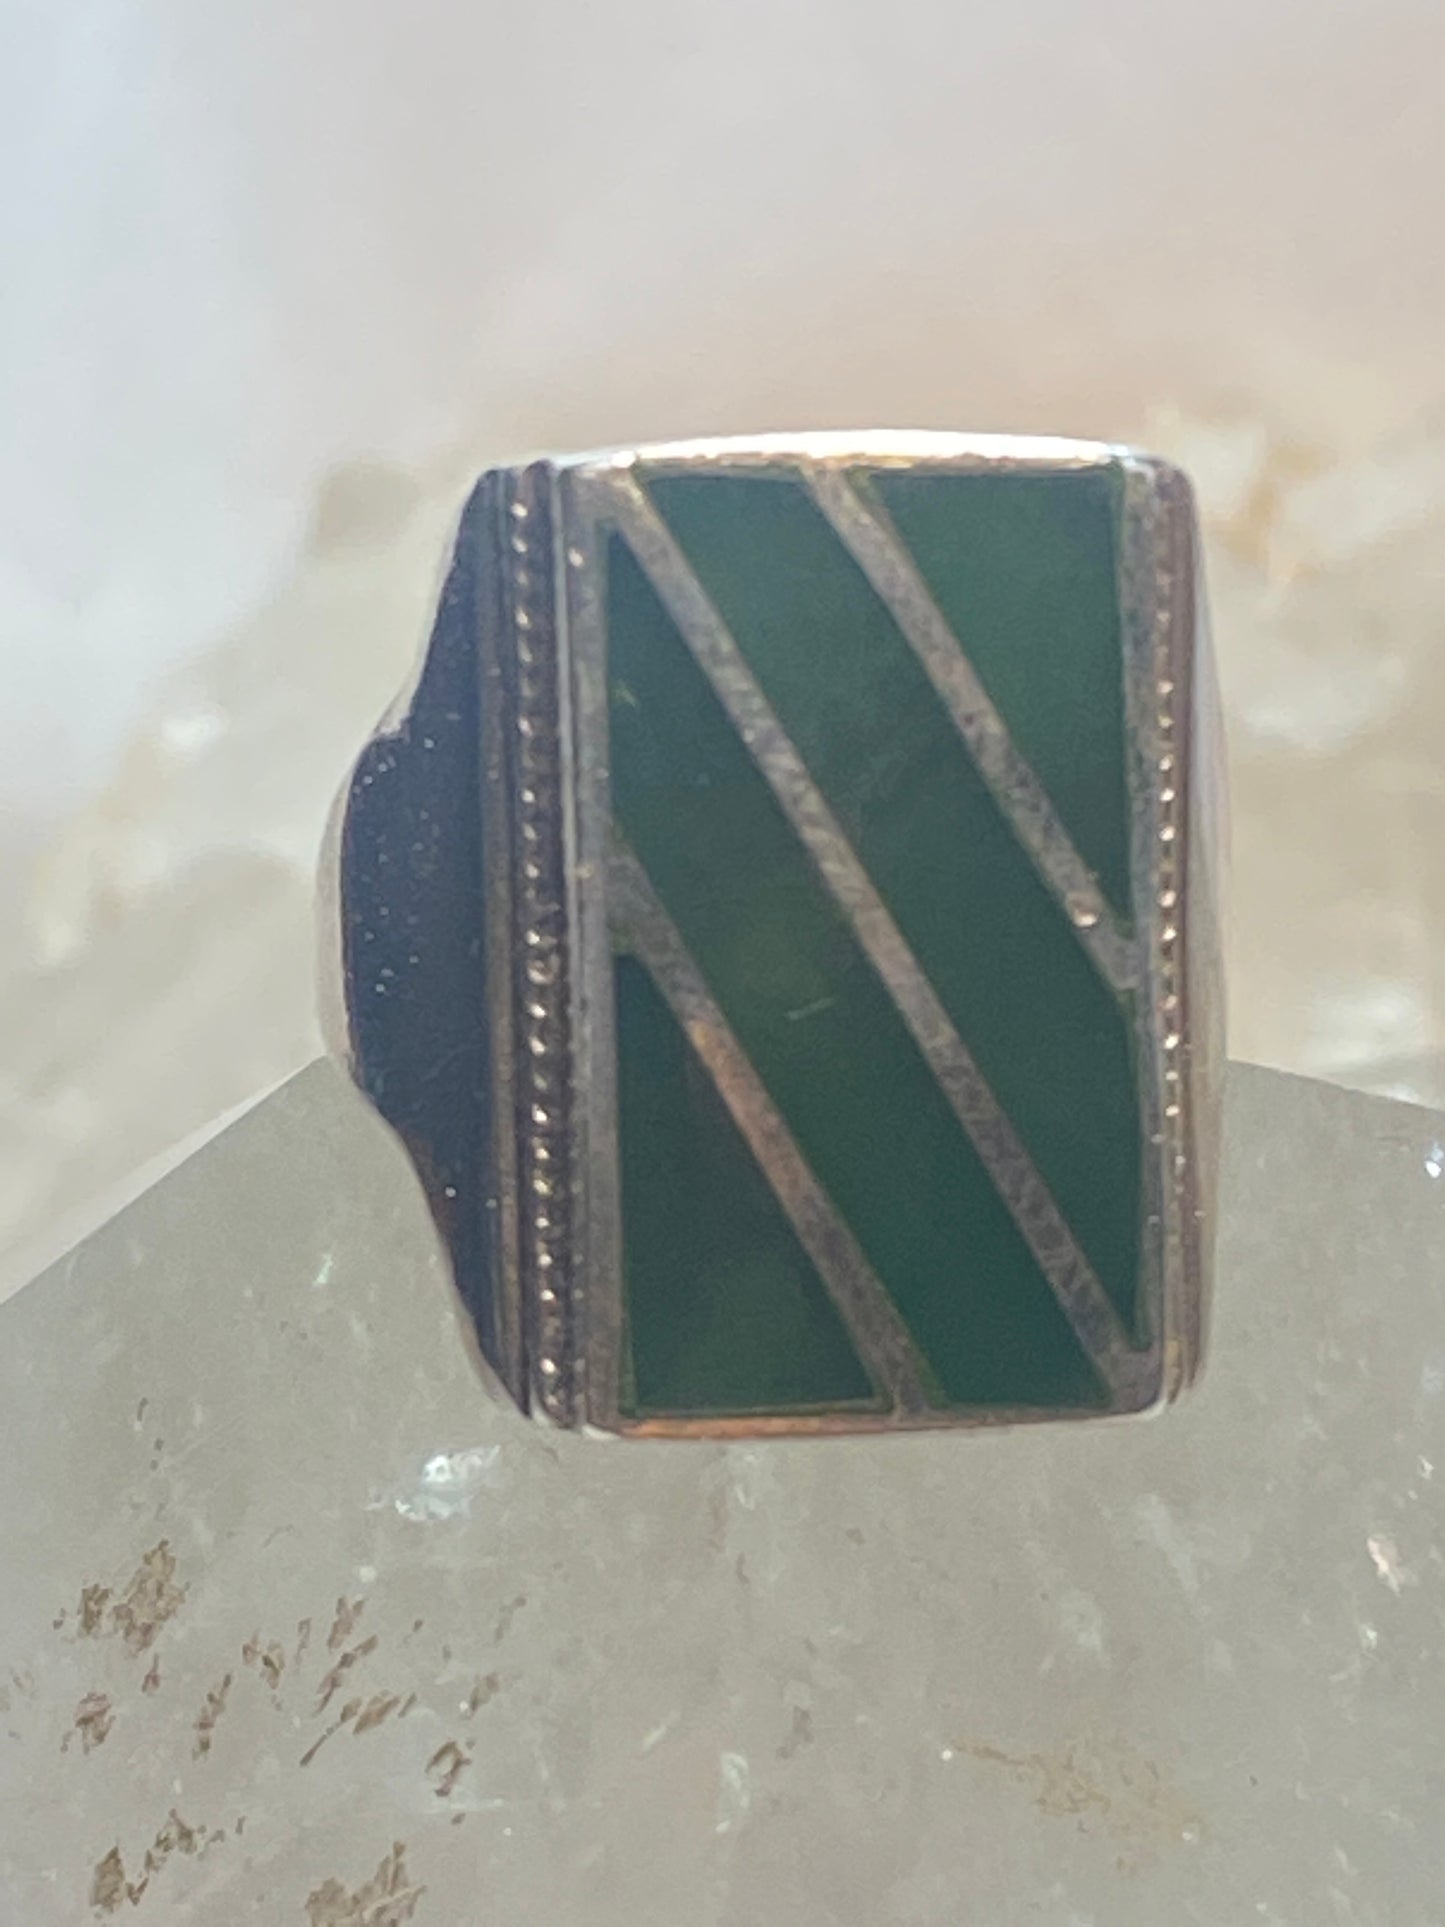 Green ring size 8.75 sterling silver men women